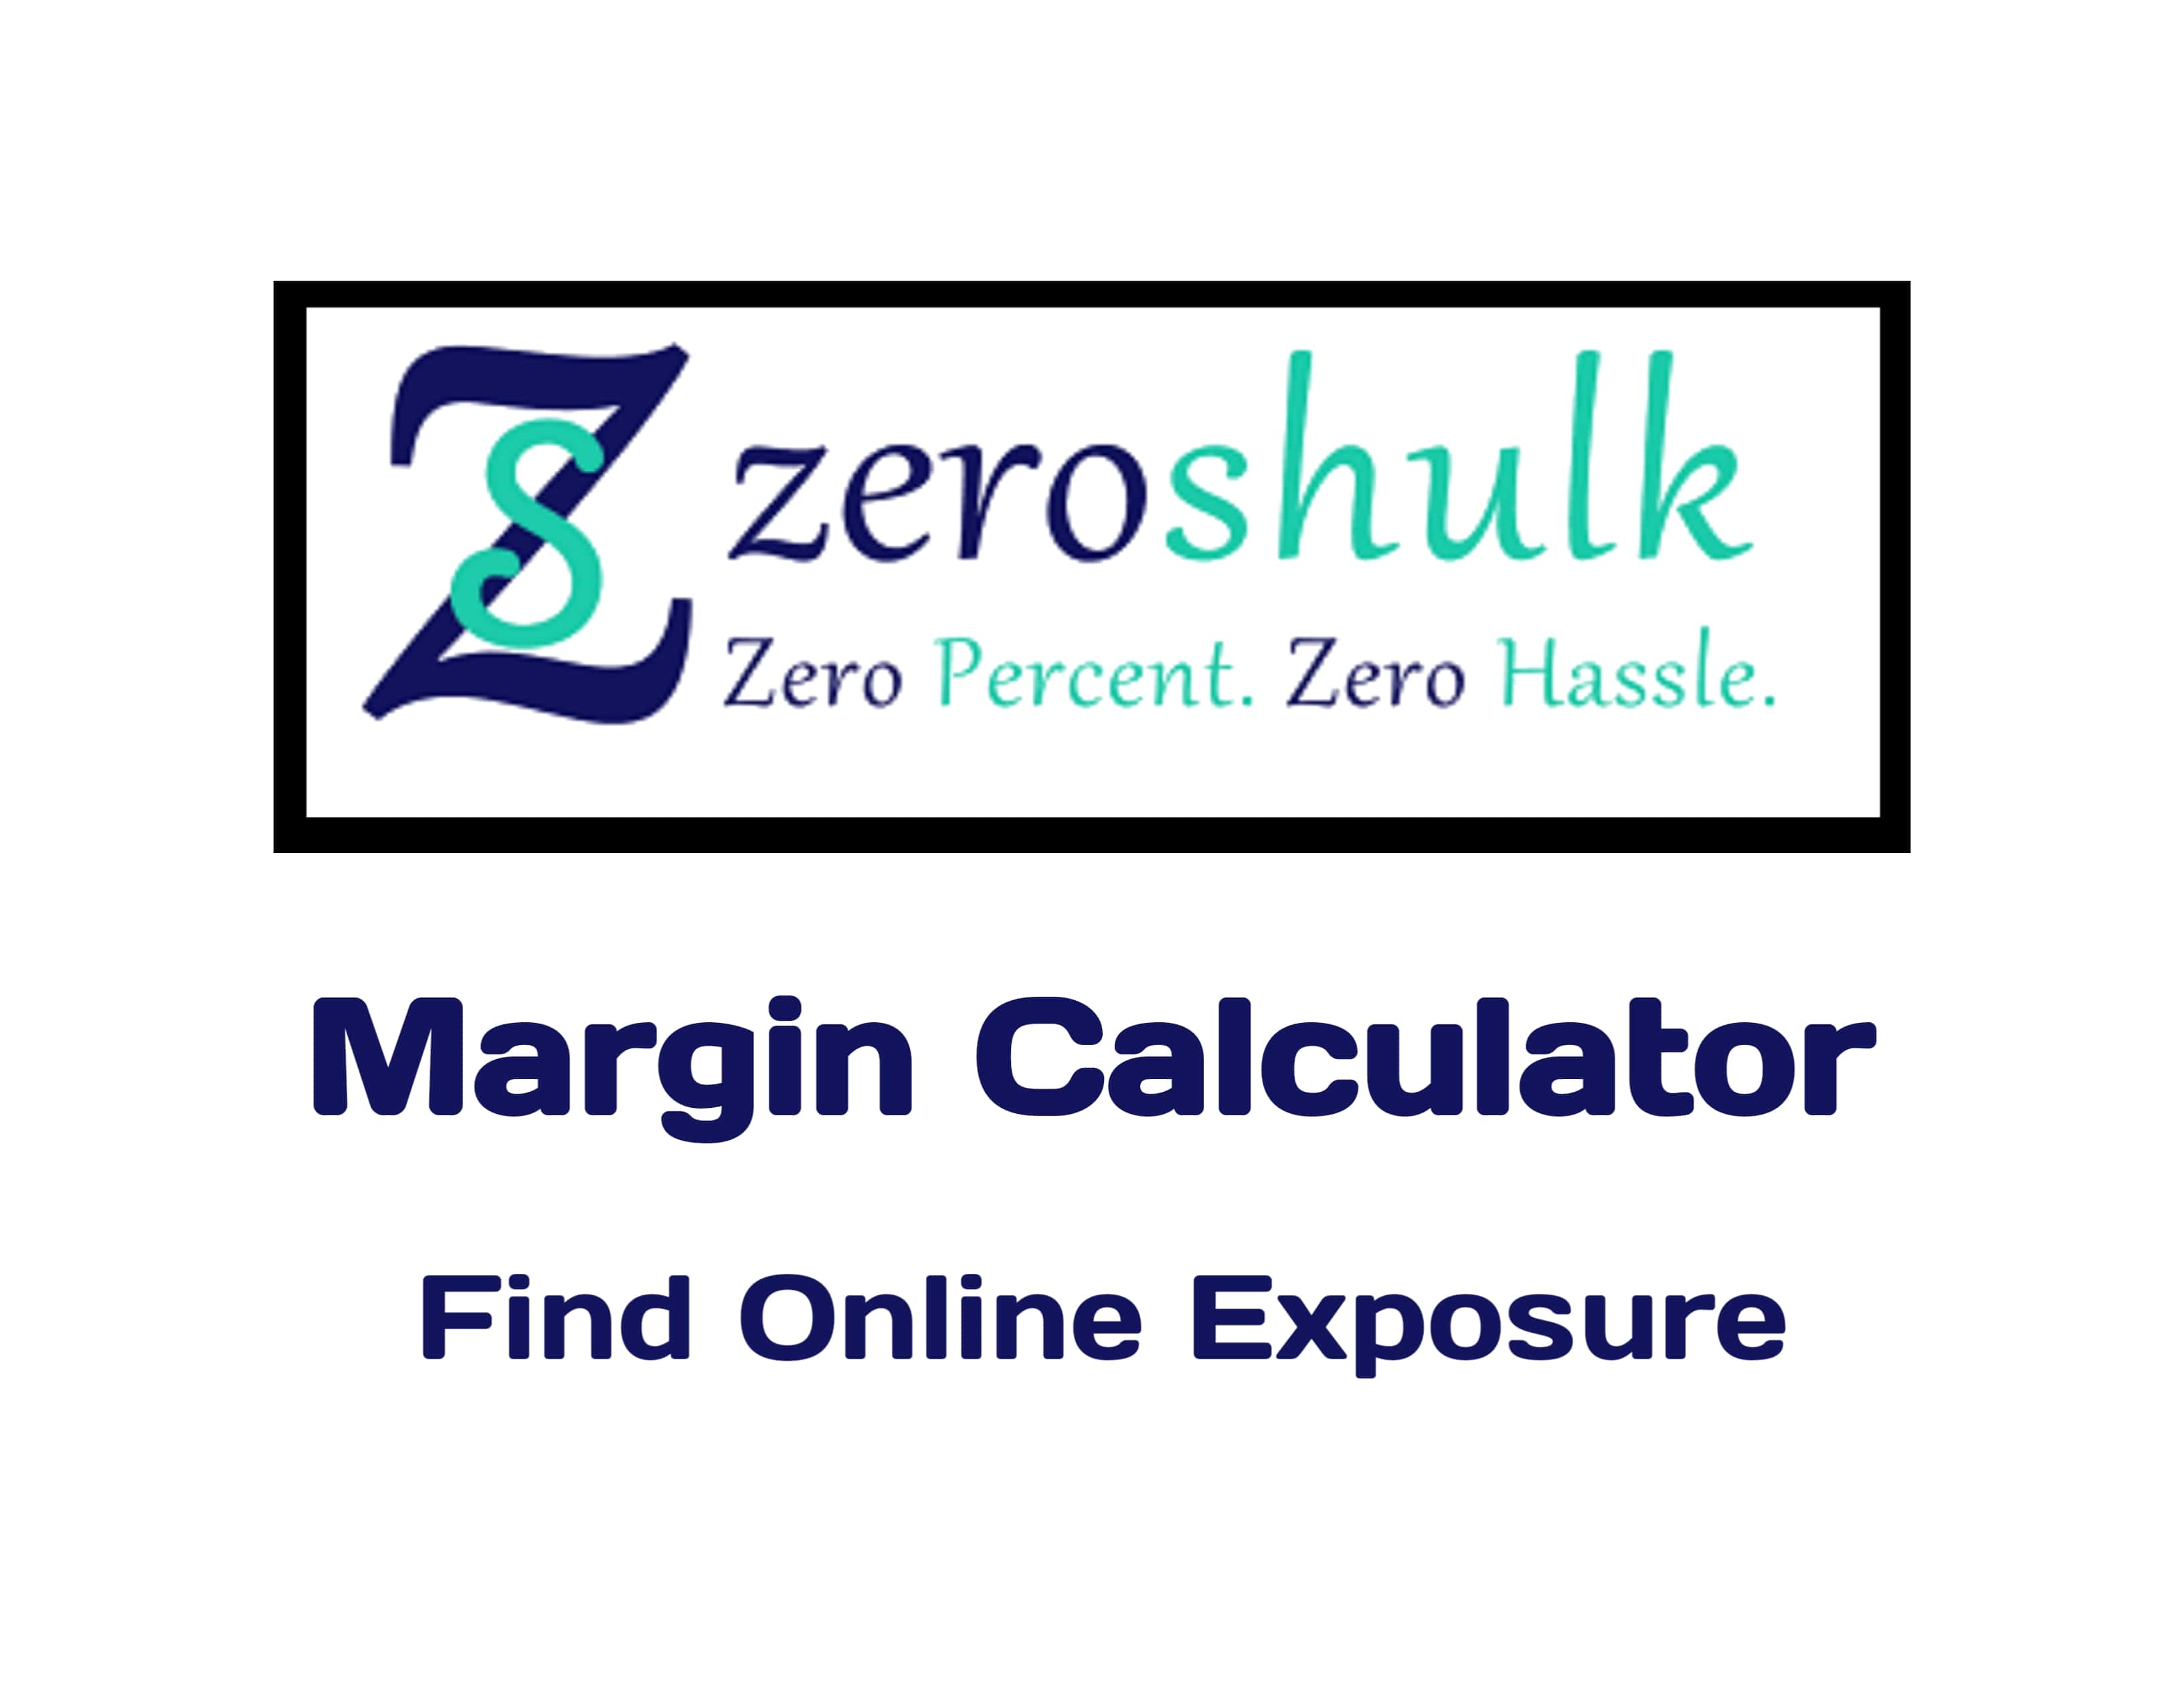 Zeroshulk Margin Calculator